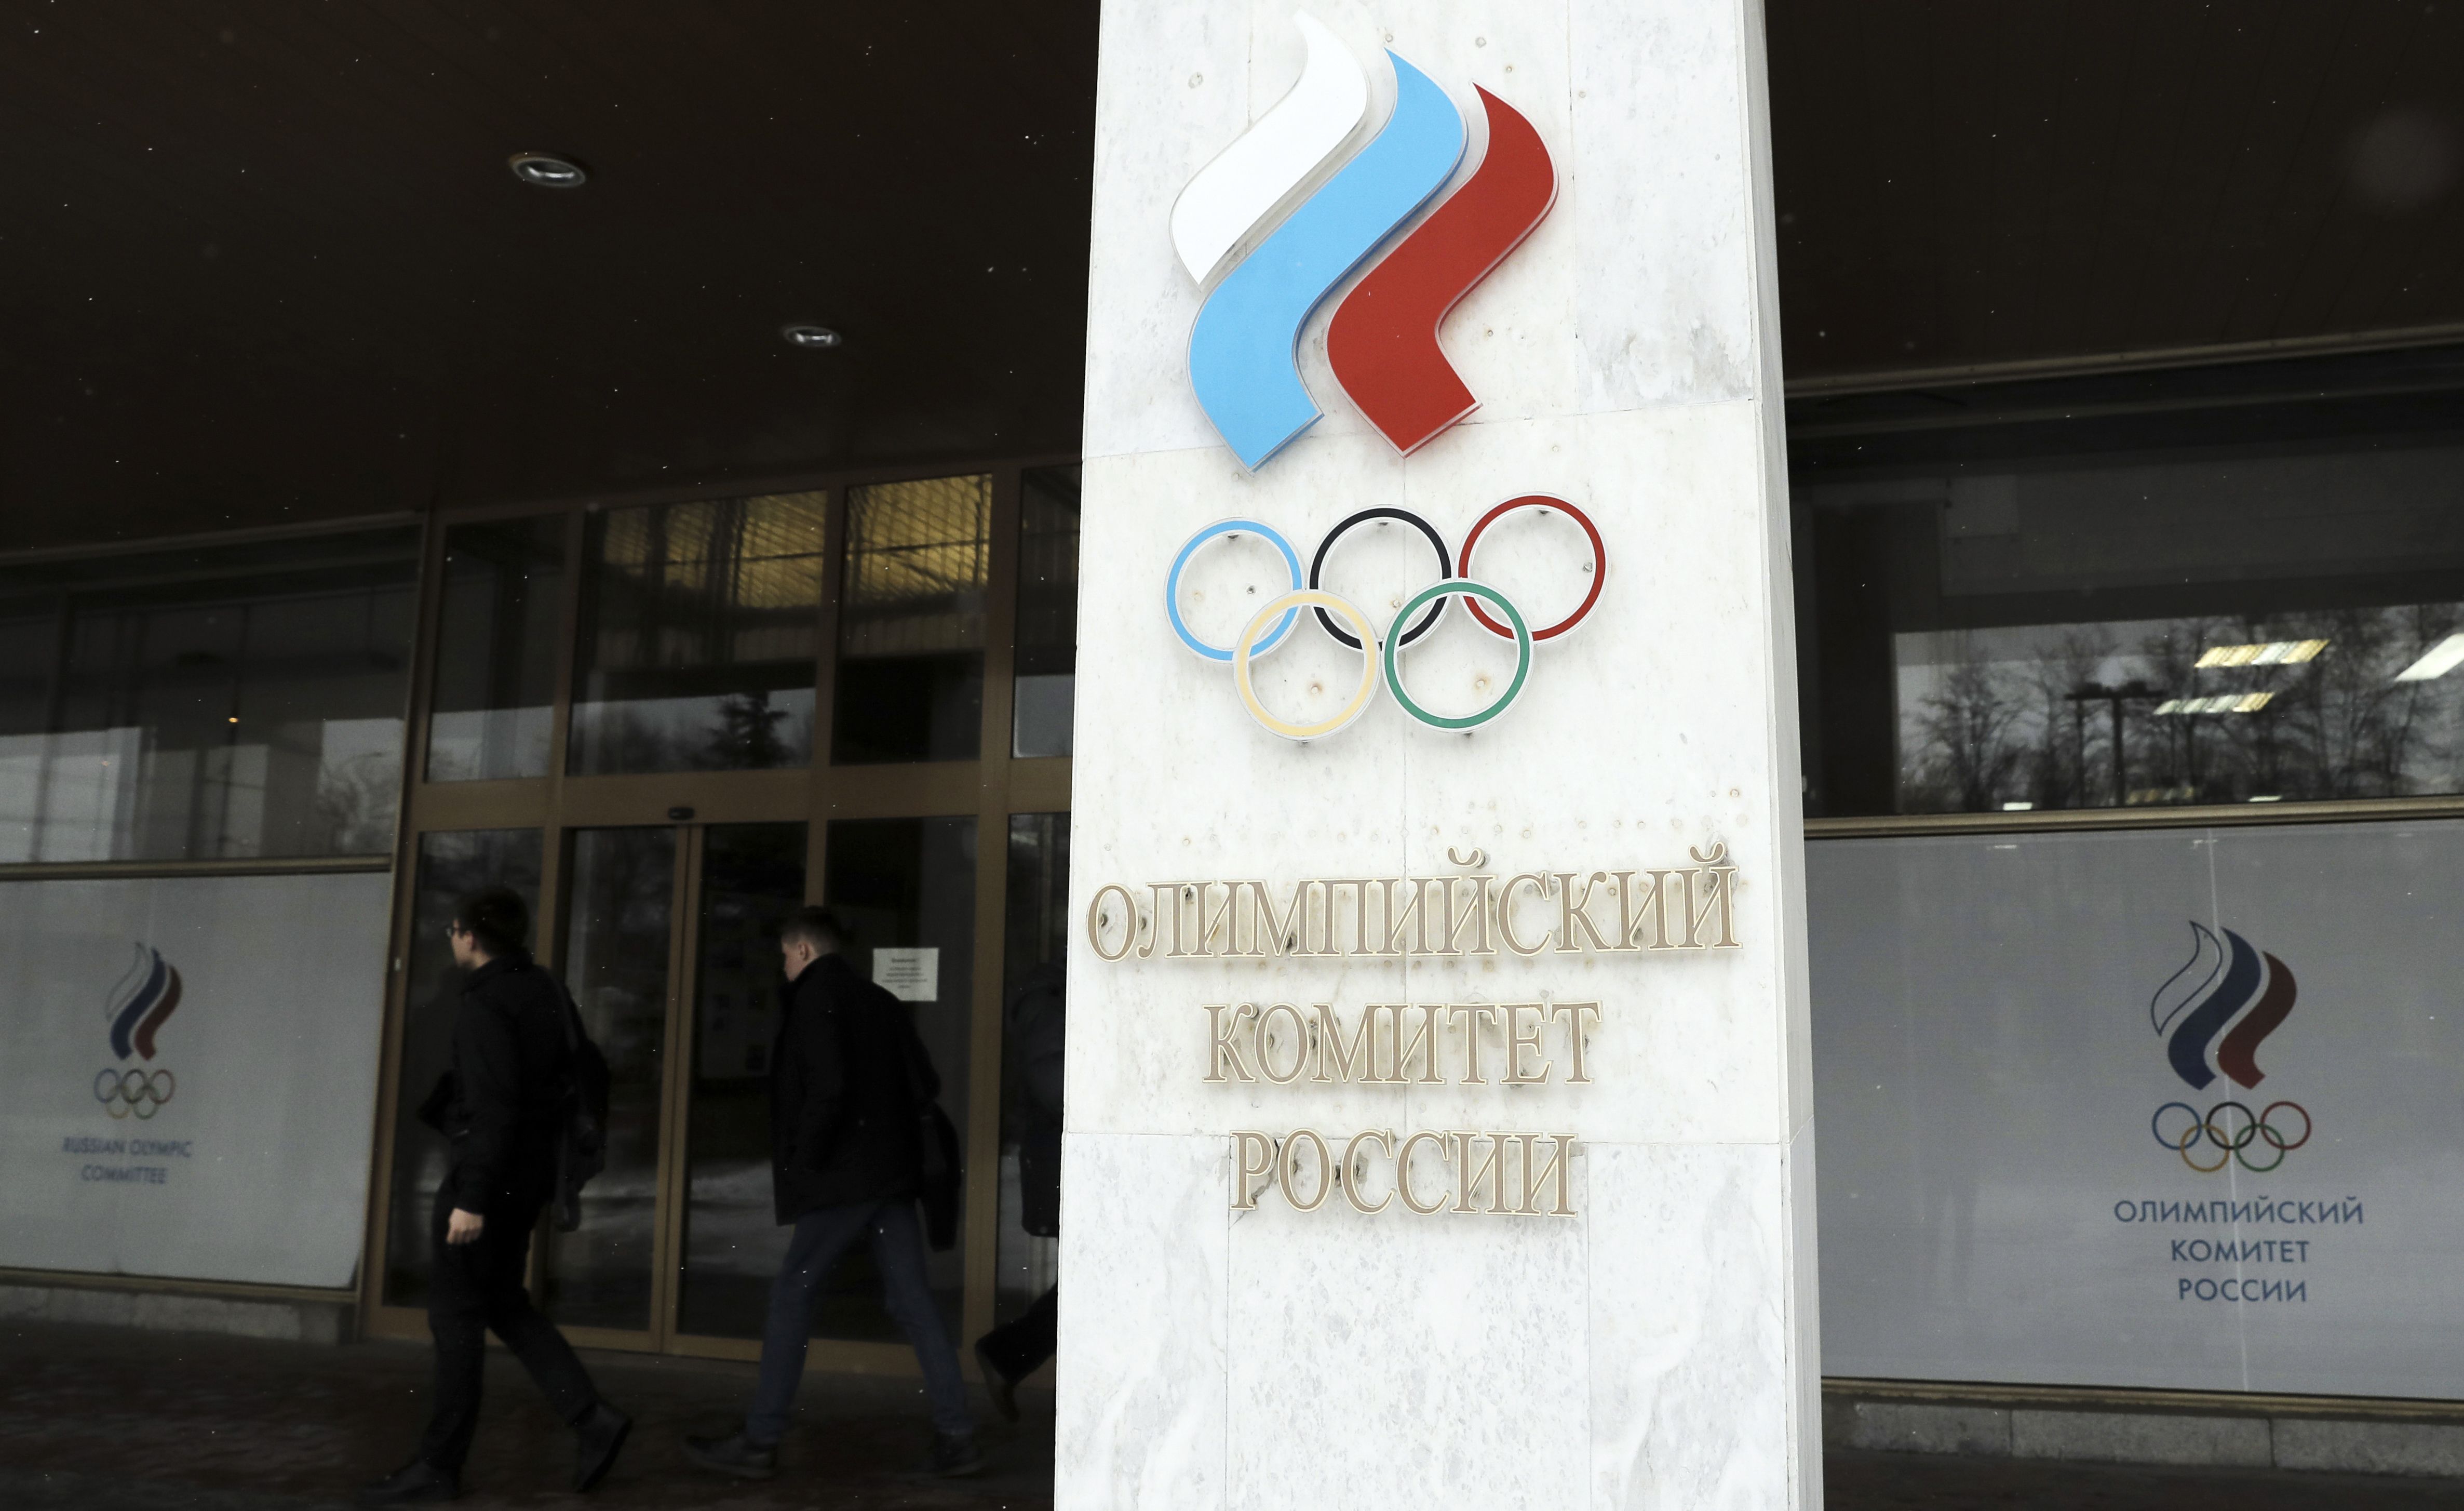 Generálna sekretárka Ruského olympijského výboru odišla z krajiny, Davydovová sa vraj už nevráti